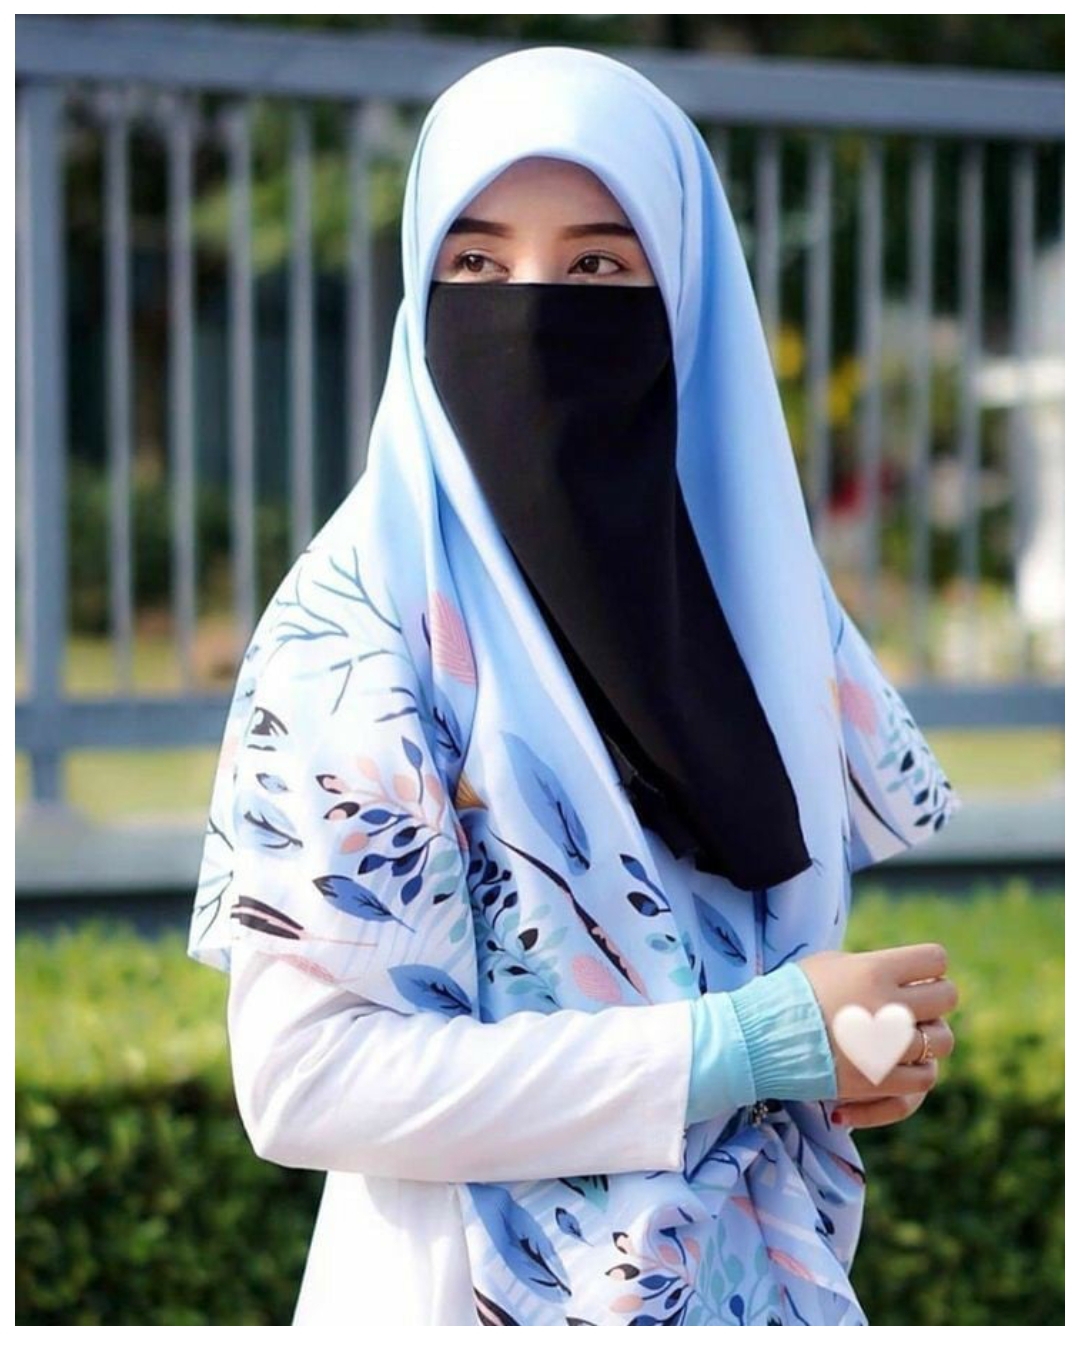 Hijab Wearing Pic Download - Black Hijab Wearing Pic - hijab pic